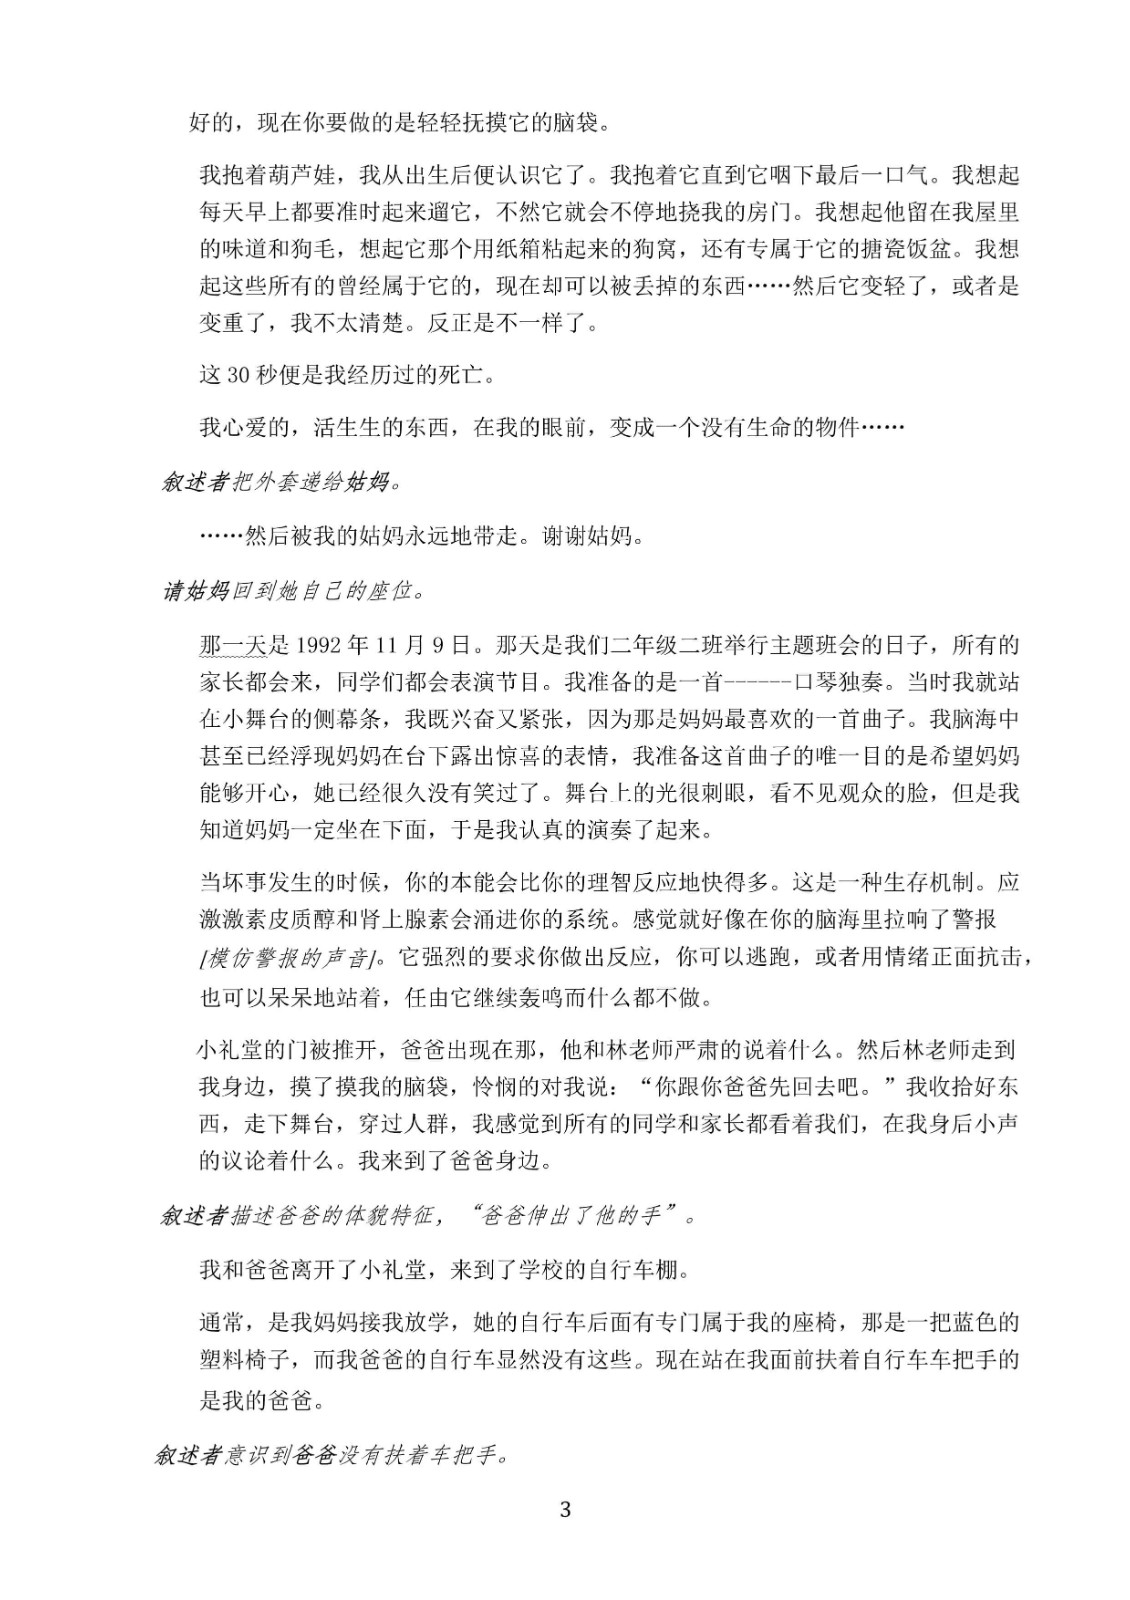 2020年上海戏剧学院硕士研究生复试规程